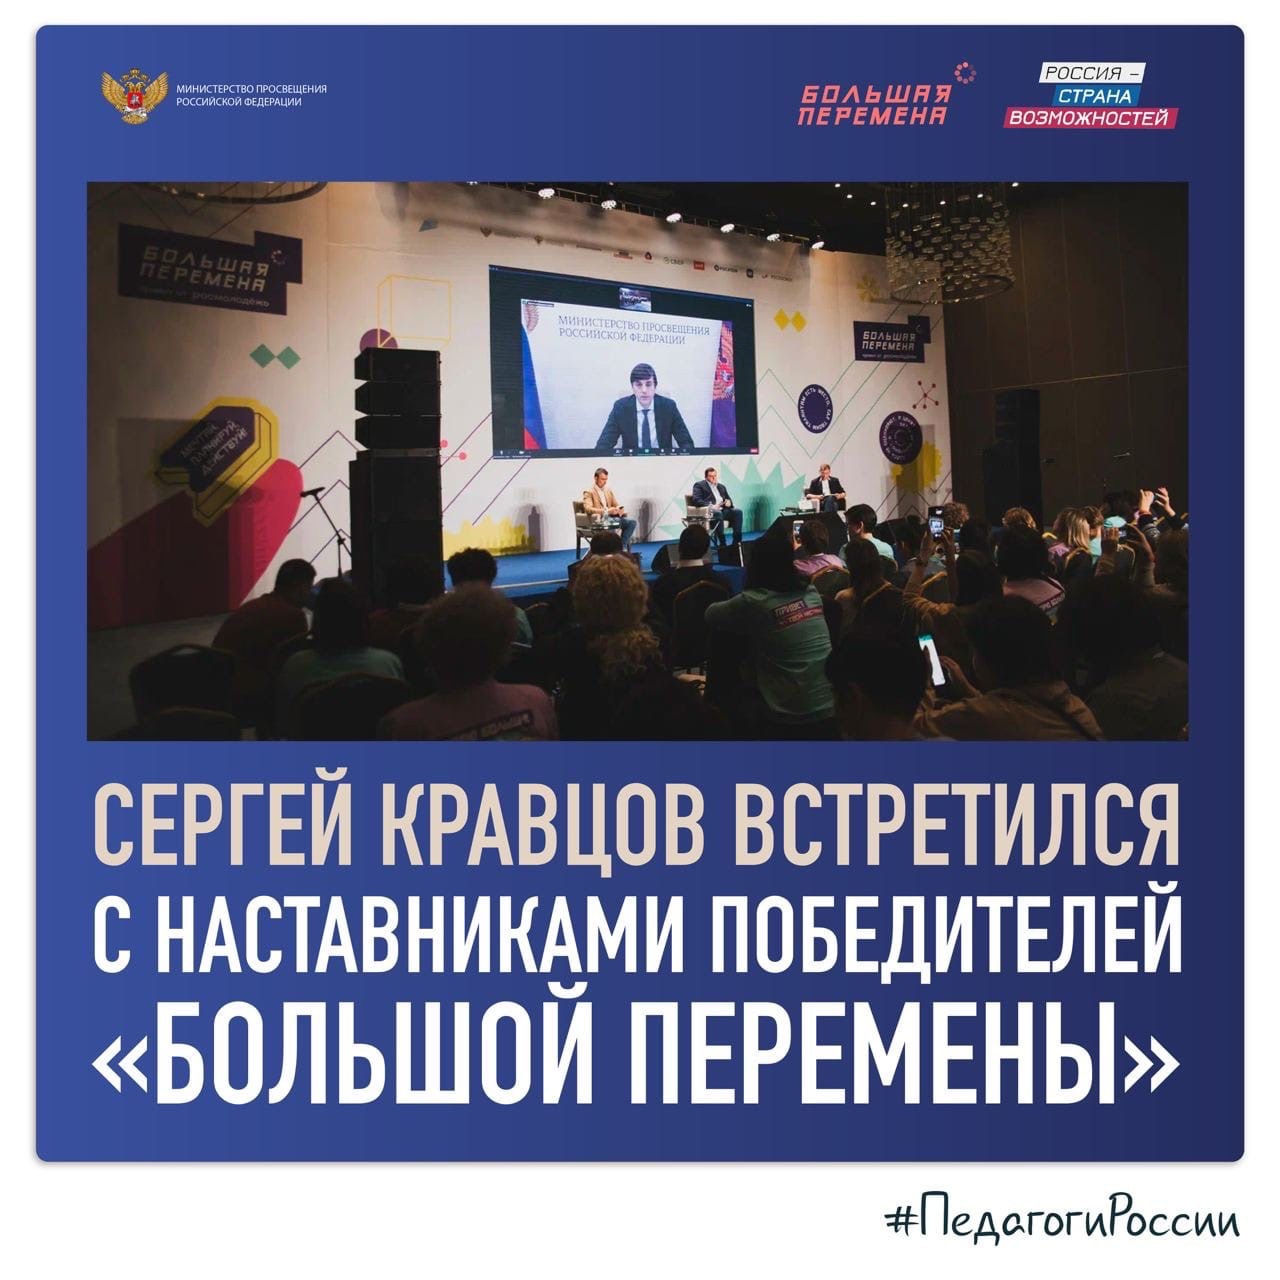 Сергей Кравцов встретился с наставниками победителей “Большой перемены”